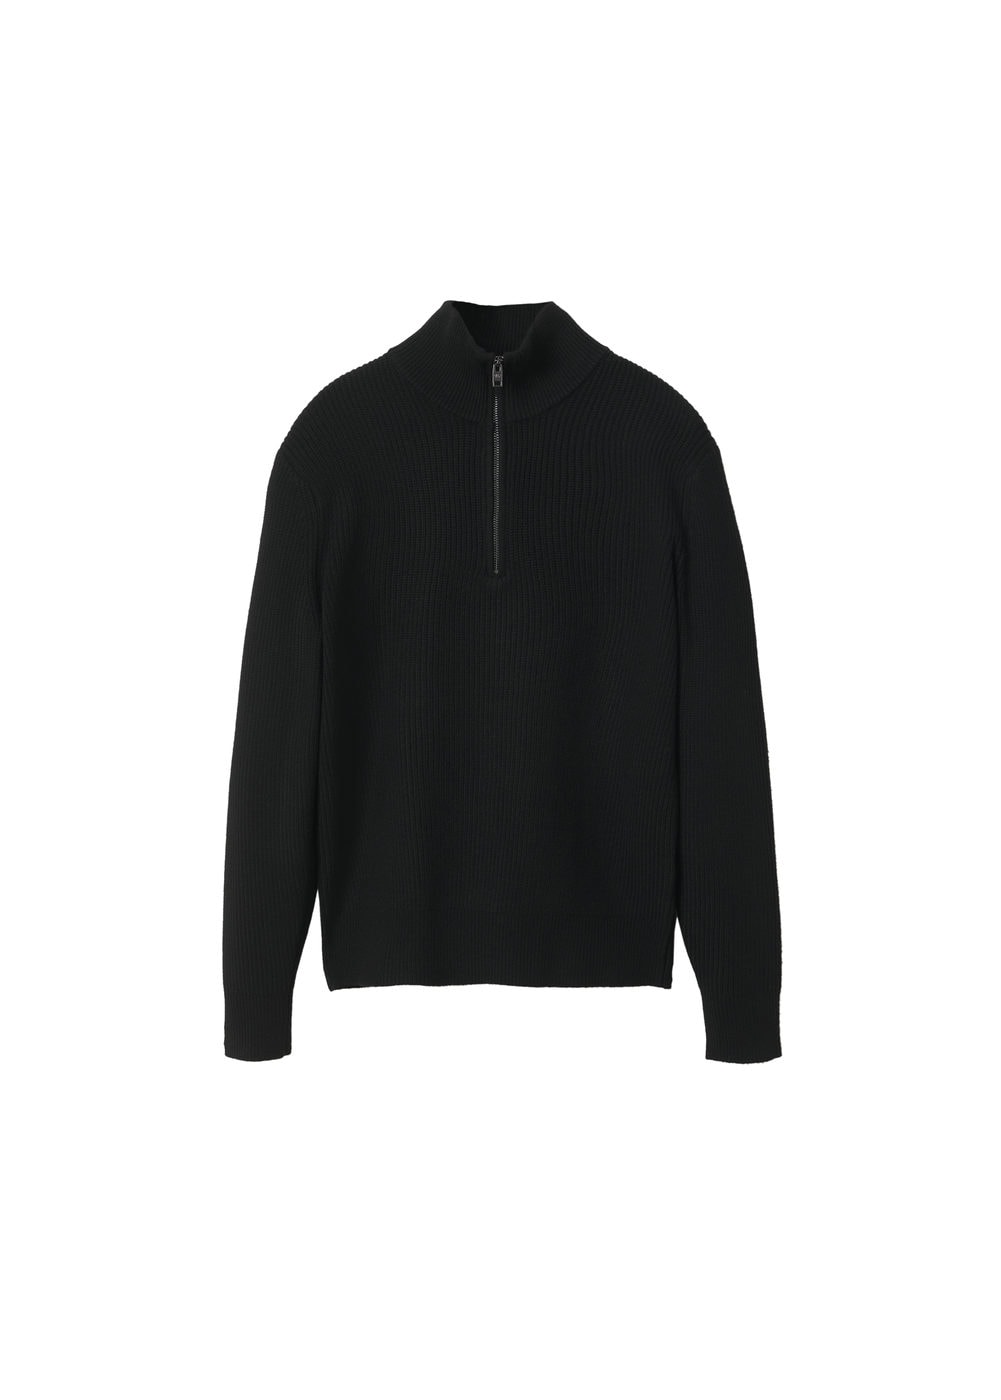 Swetry & kardigany Odzież MANGO MAN Sweter parkd w kolorze Czarnym 